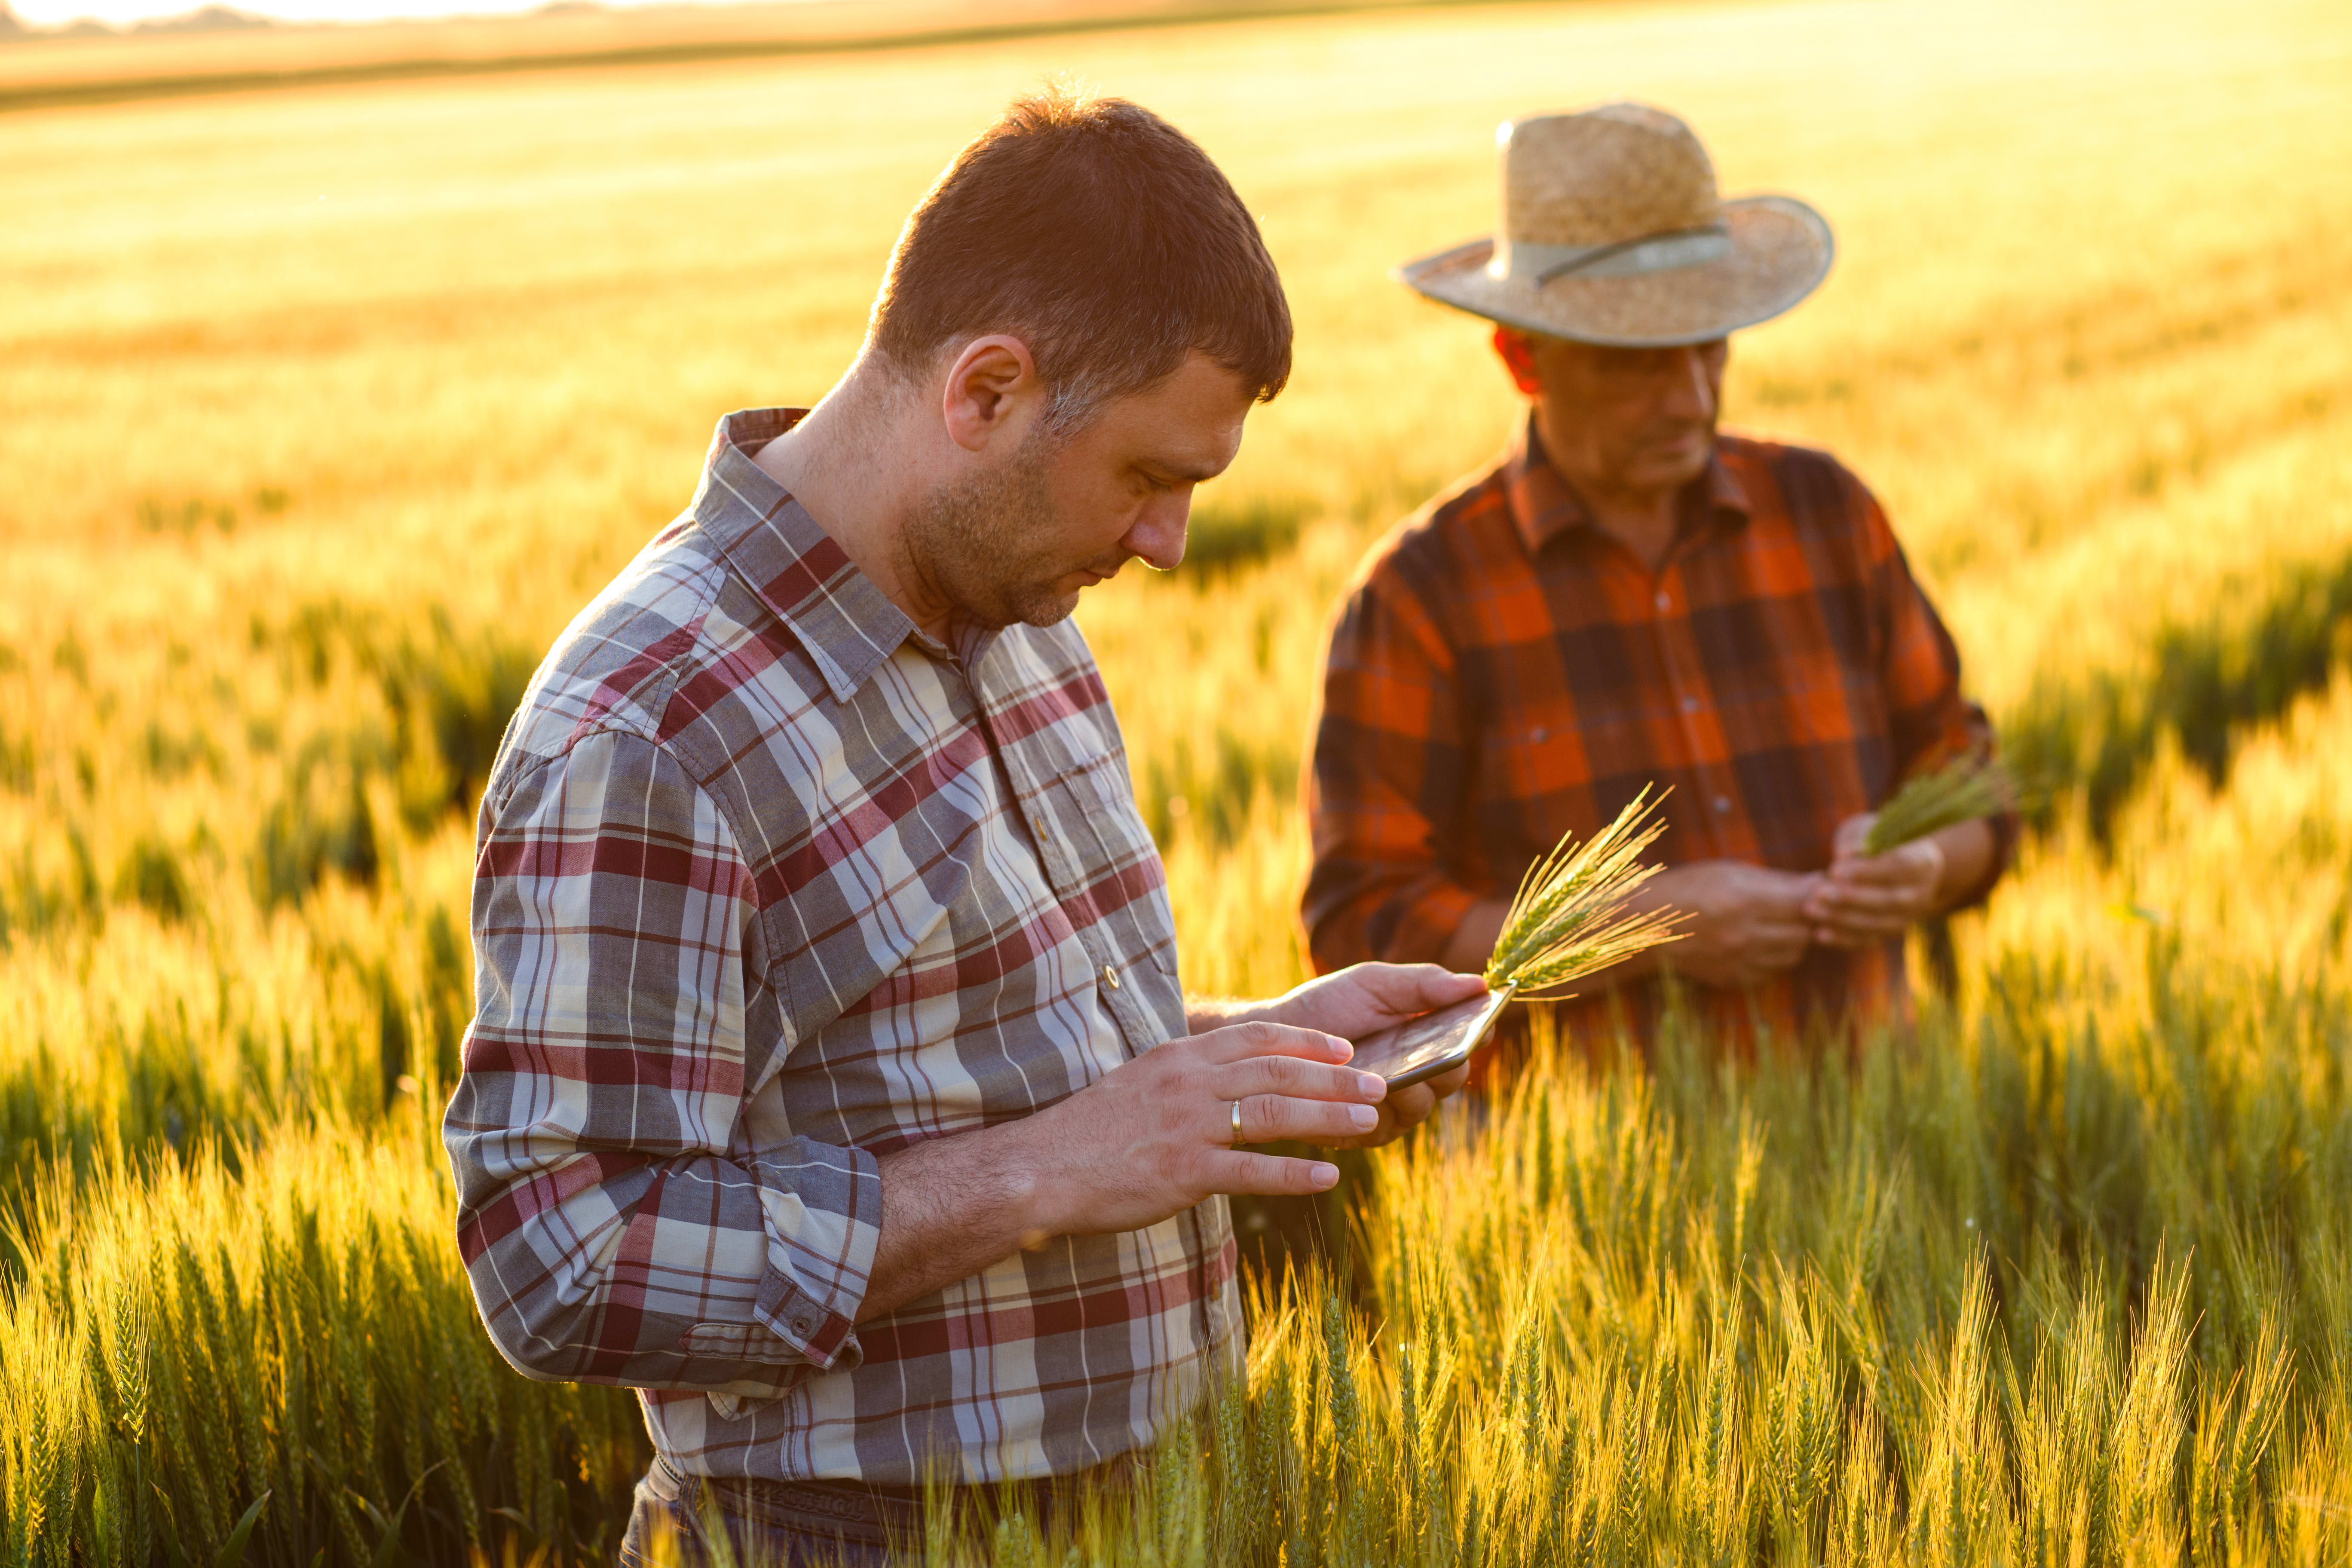 Two men in a field of wheat